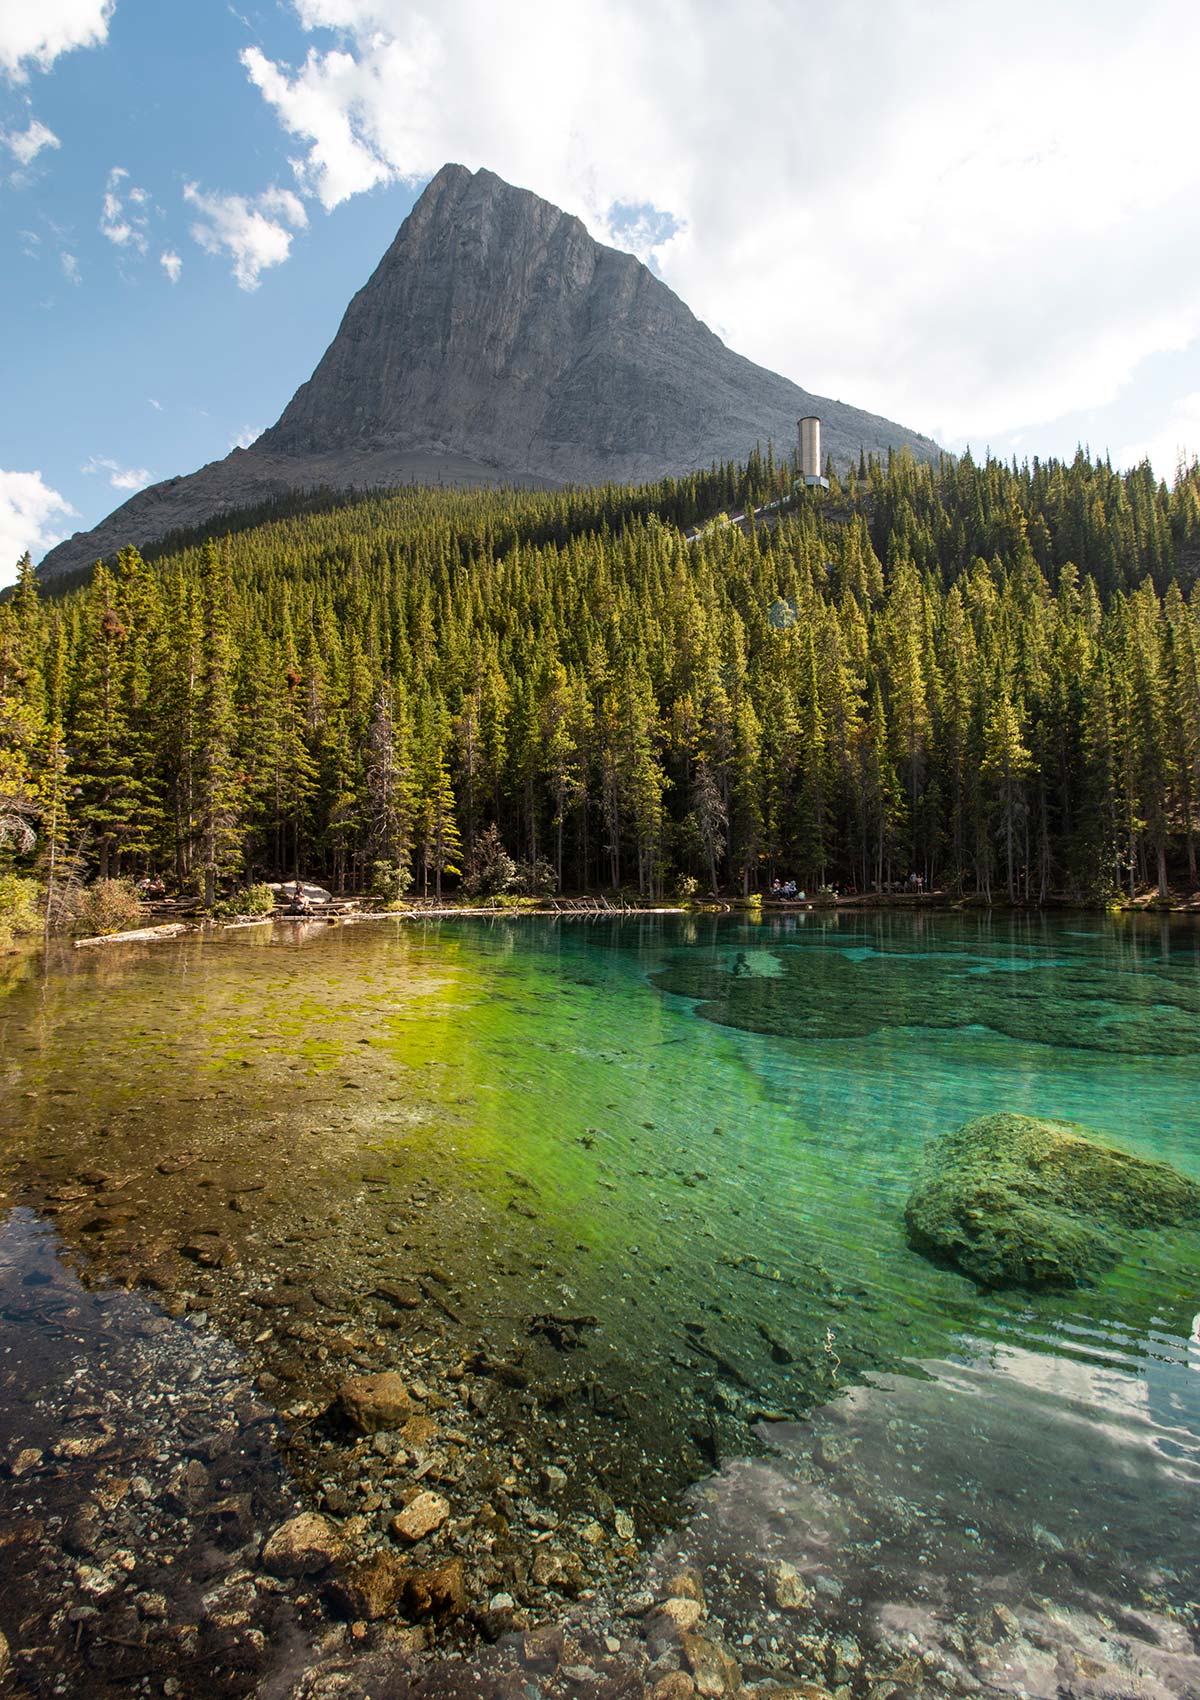 Lacs Grassi, Canmore, Alberta, Canada / Grassi Lakes, Canmore, Alberta, Canada